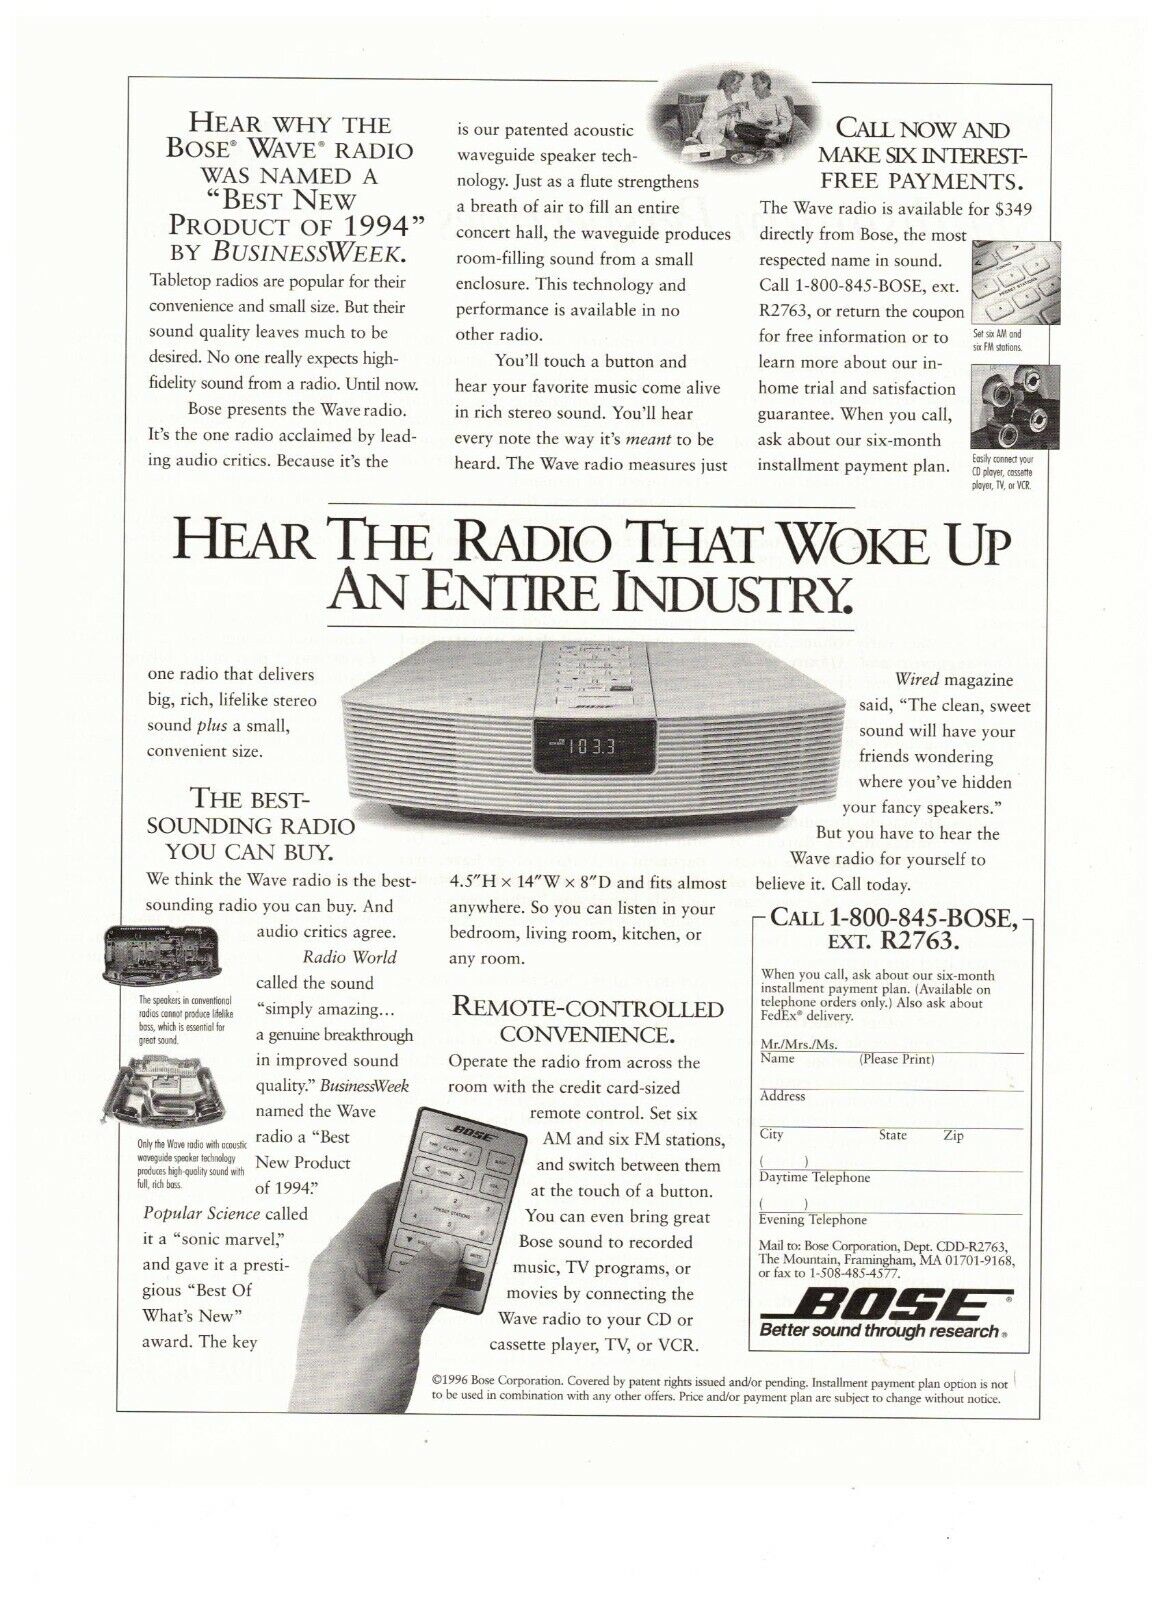 1997 Bose Wave Radio Woke Up Industry Vintage Print Advertisement